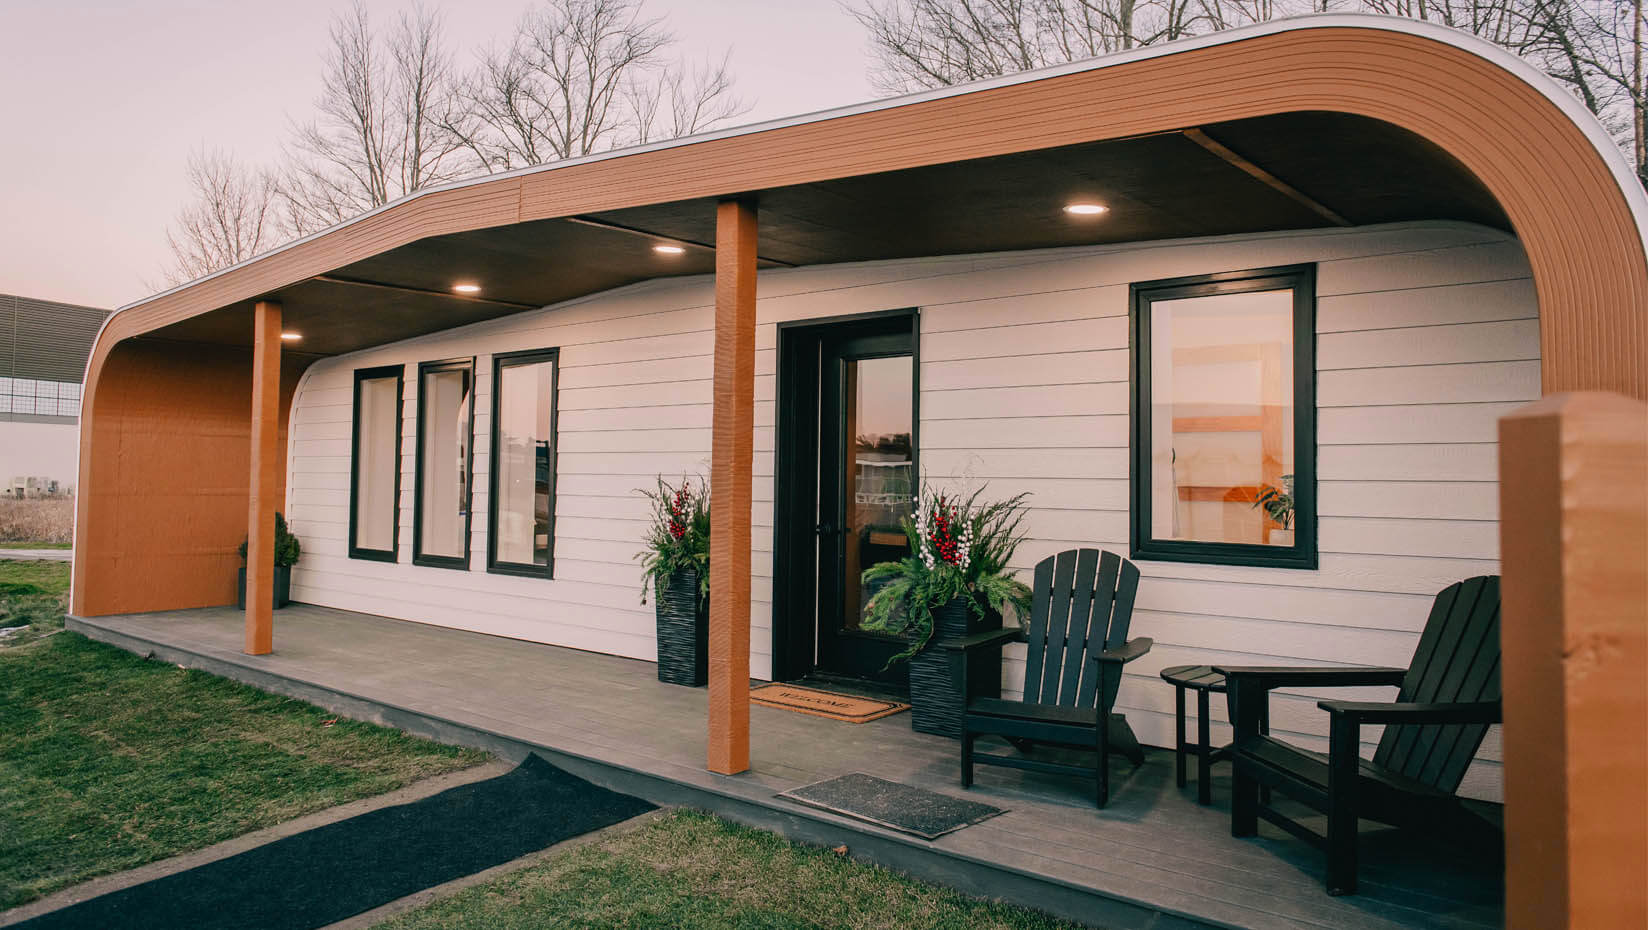 Conheça a primeira casa impressa em 3D com materiais naturais e sustentáveis